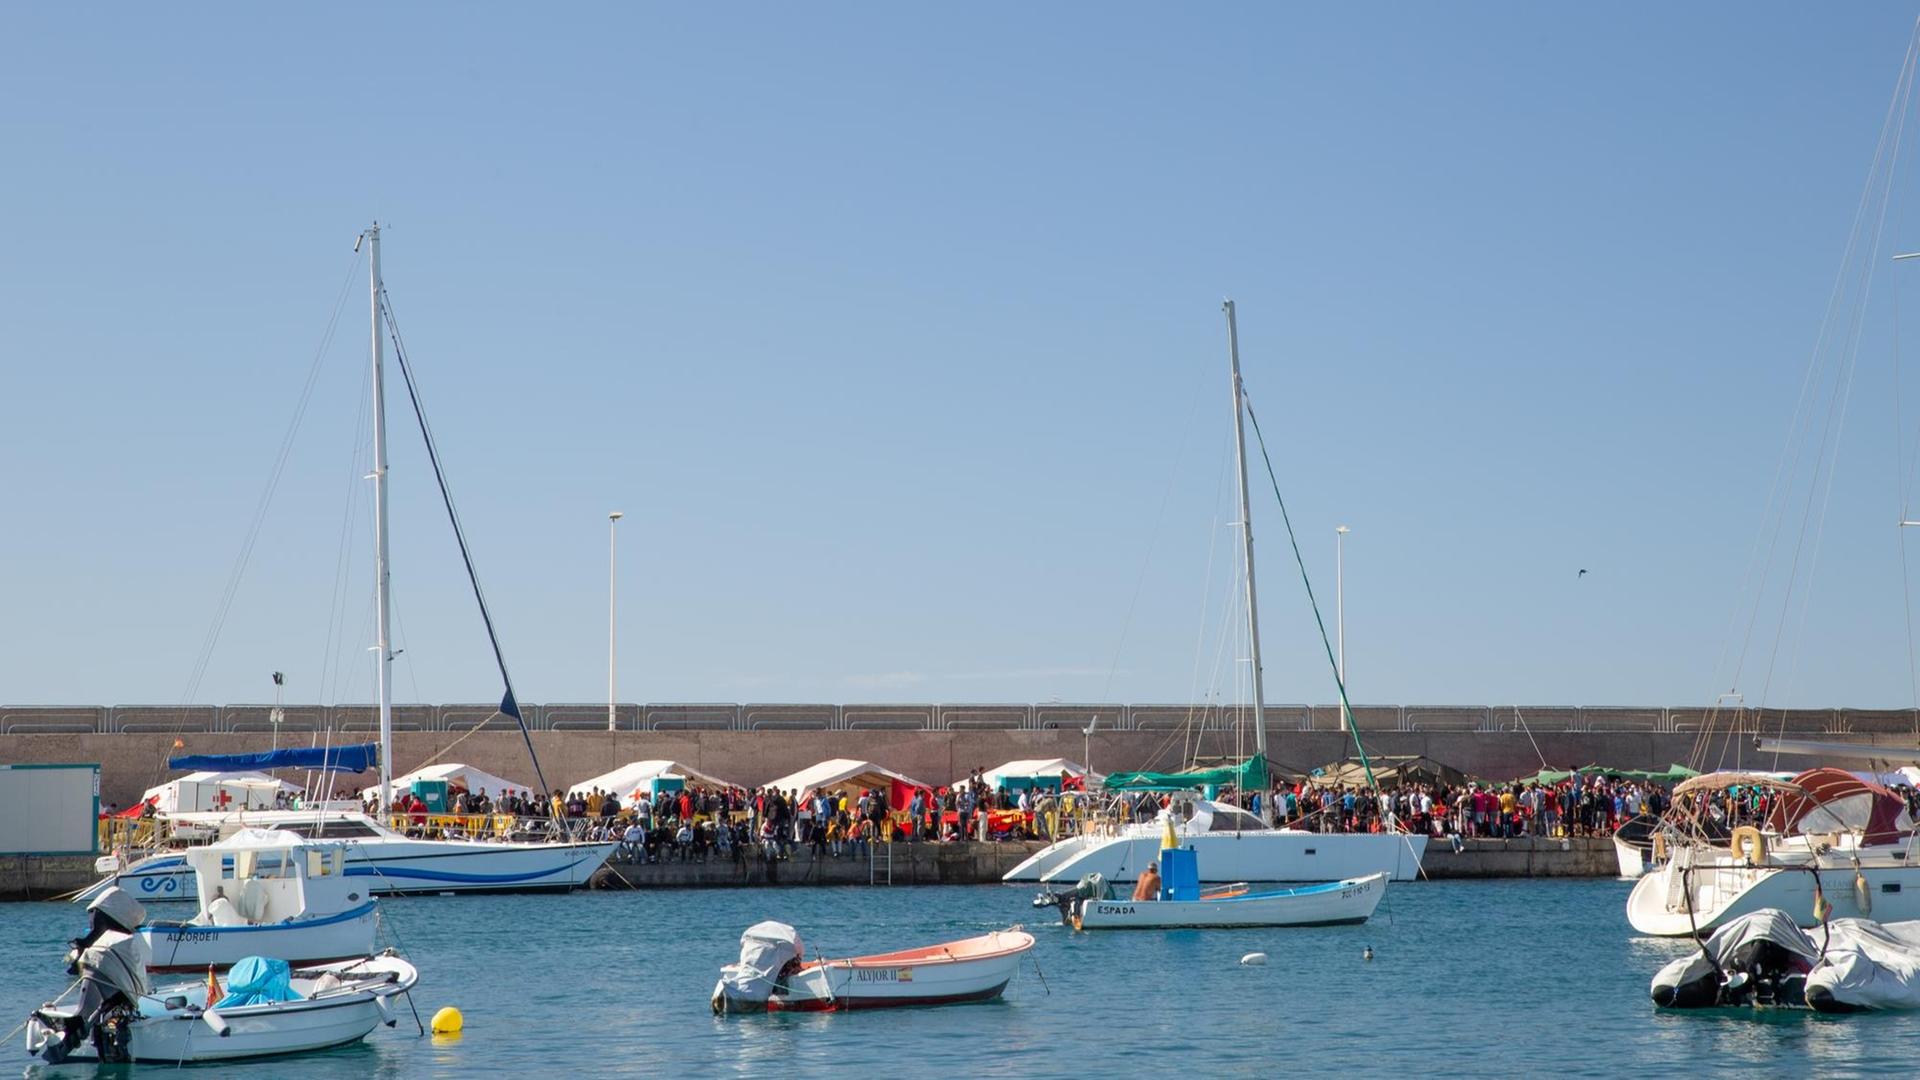 Blick auf den Hafen von Arguineguín. Im Hafenbecken Boote, an Land Zelte, an denen sich Menschen drängen.